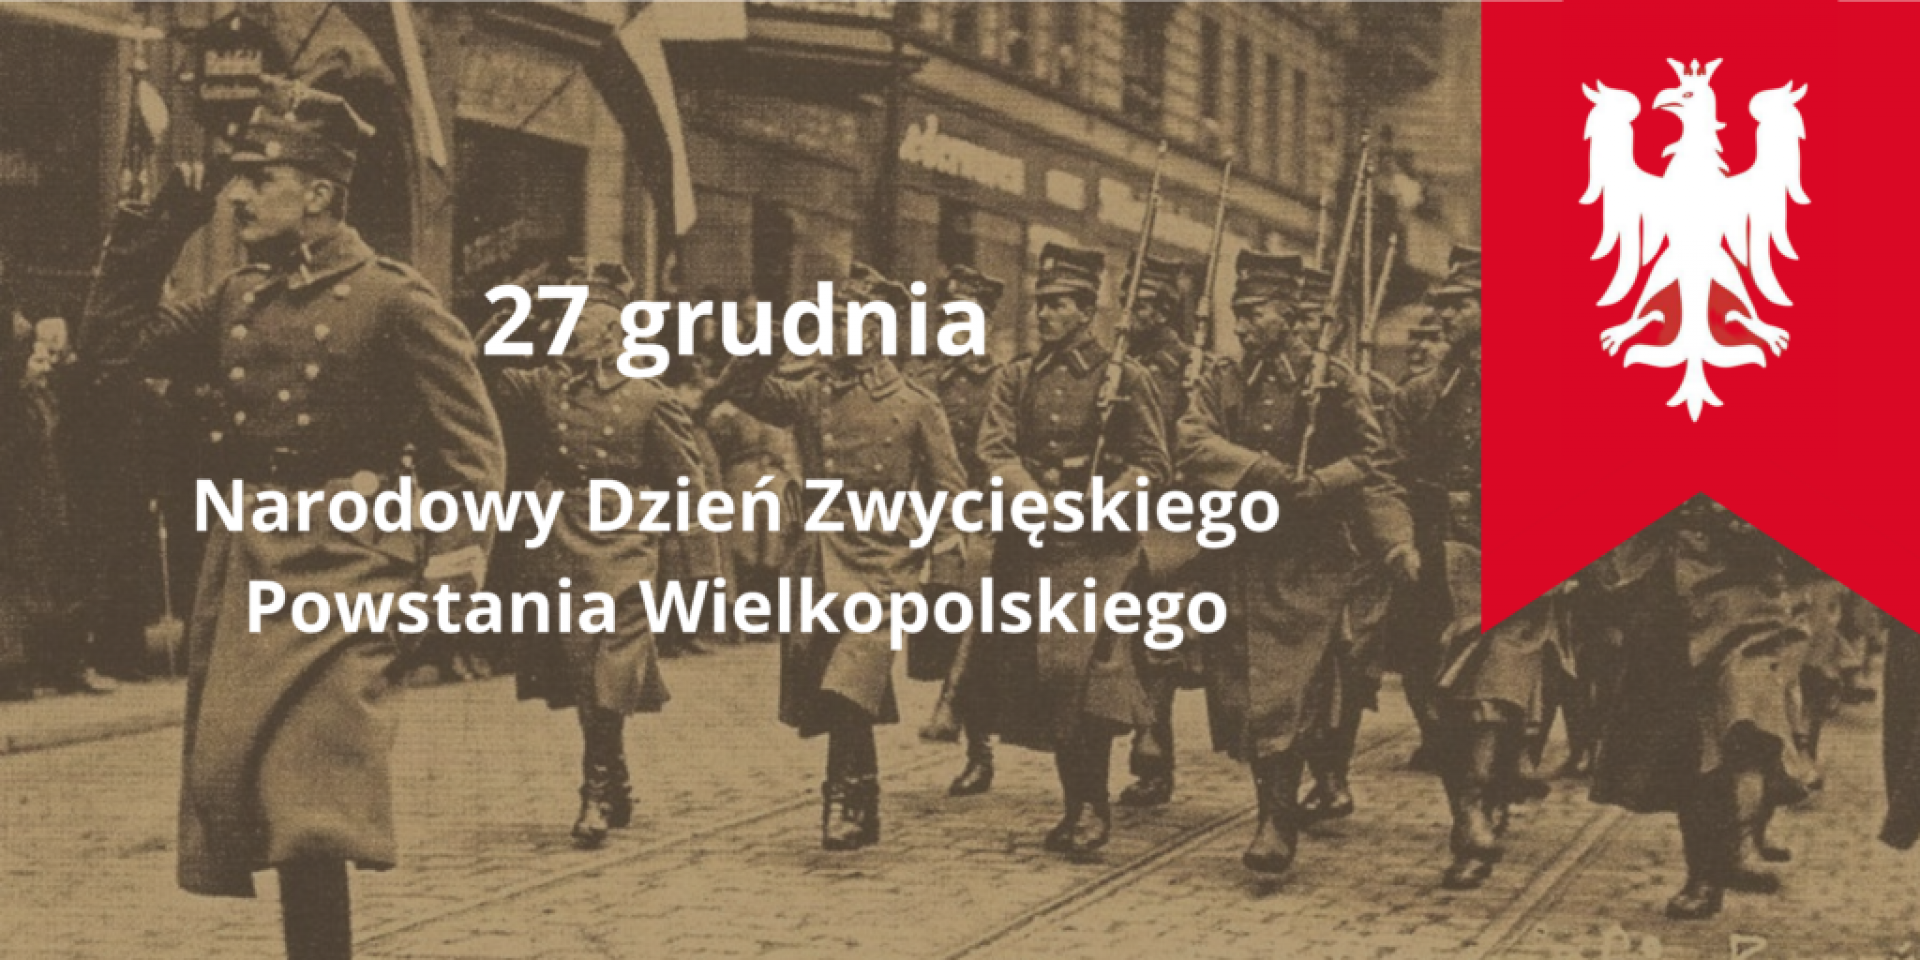 27 grudnia - dziś Narodowy Dzień Zwycięskiego Powstania Wielkopolskiego